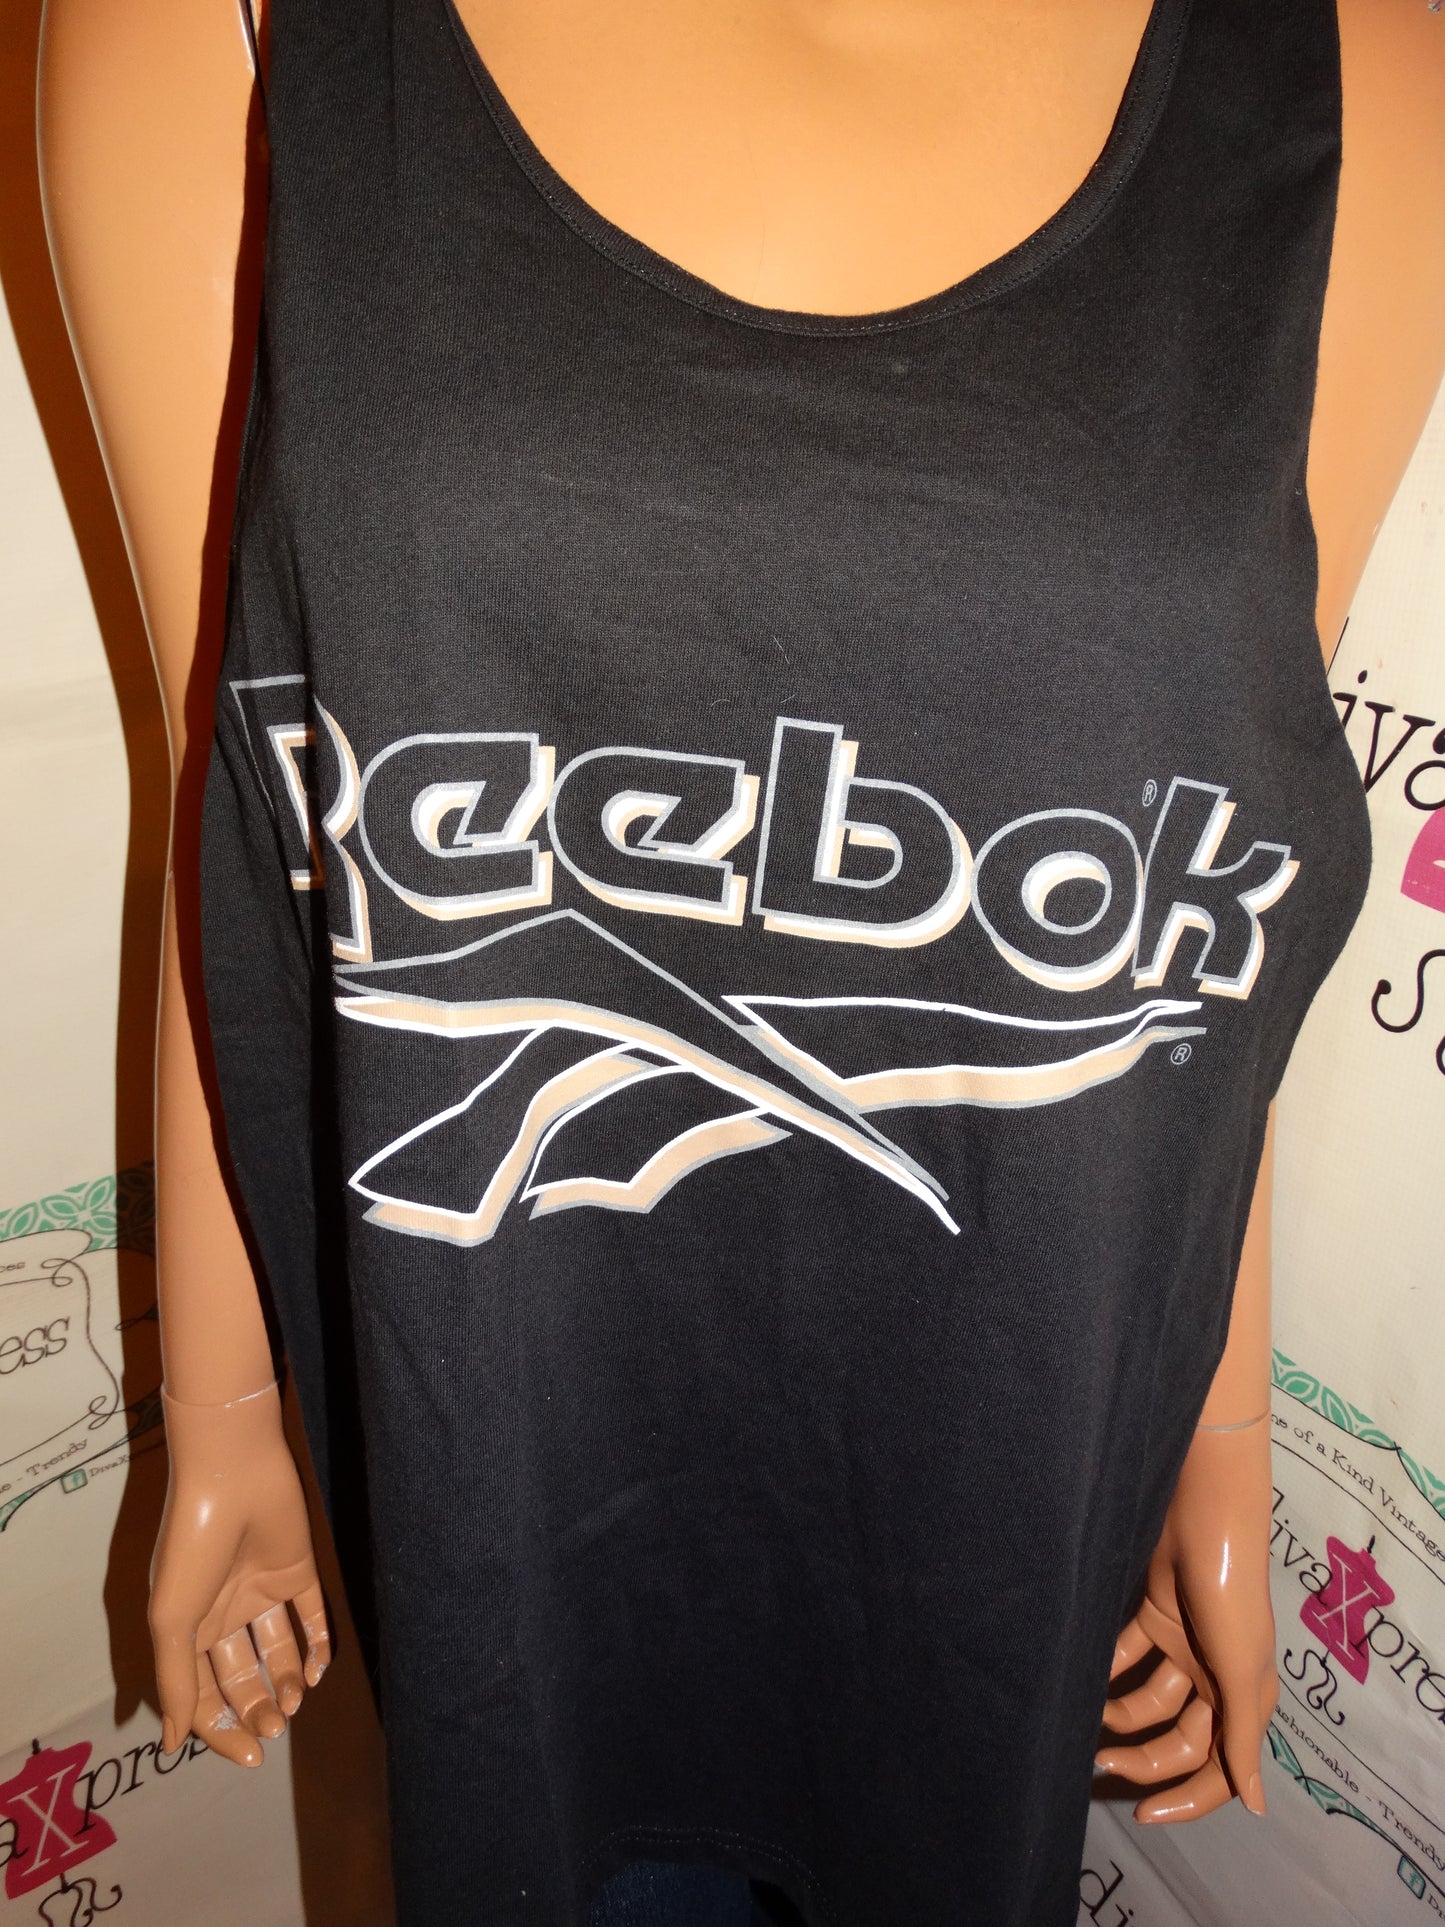 Vintage Reebok Black T shirt SIze 1x